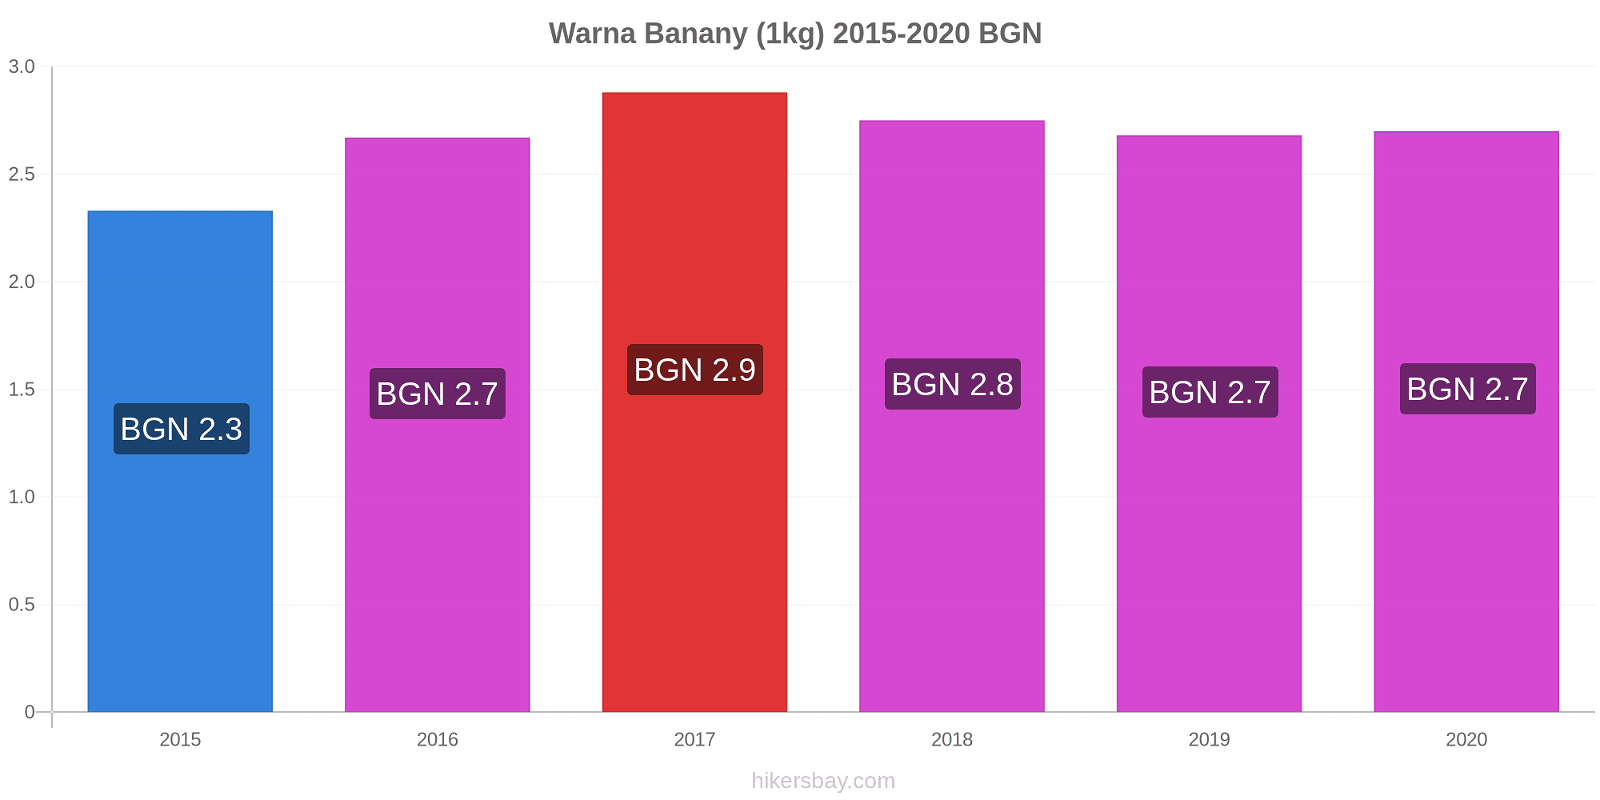 Warna zmiany cen Banany (1kg) hikersbay.com